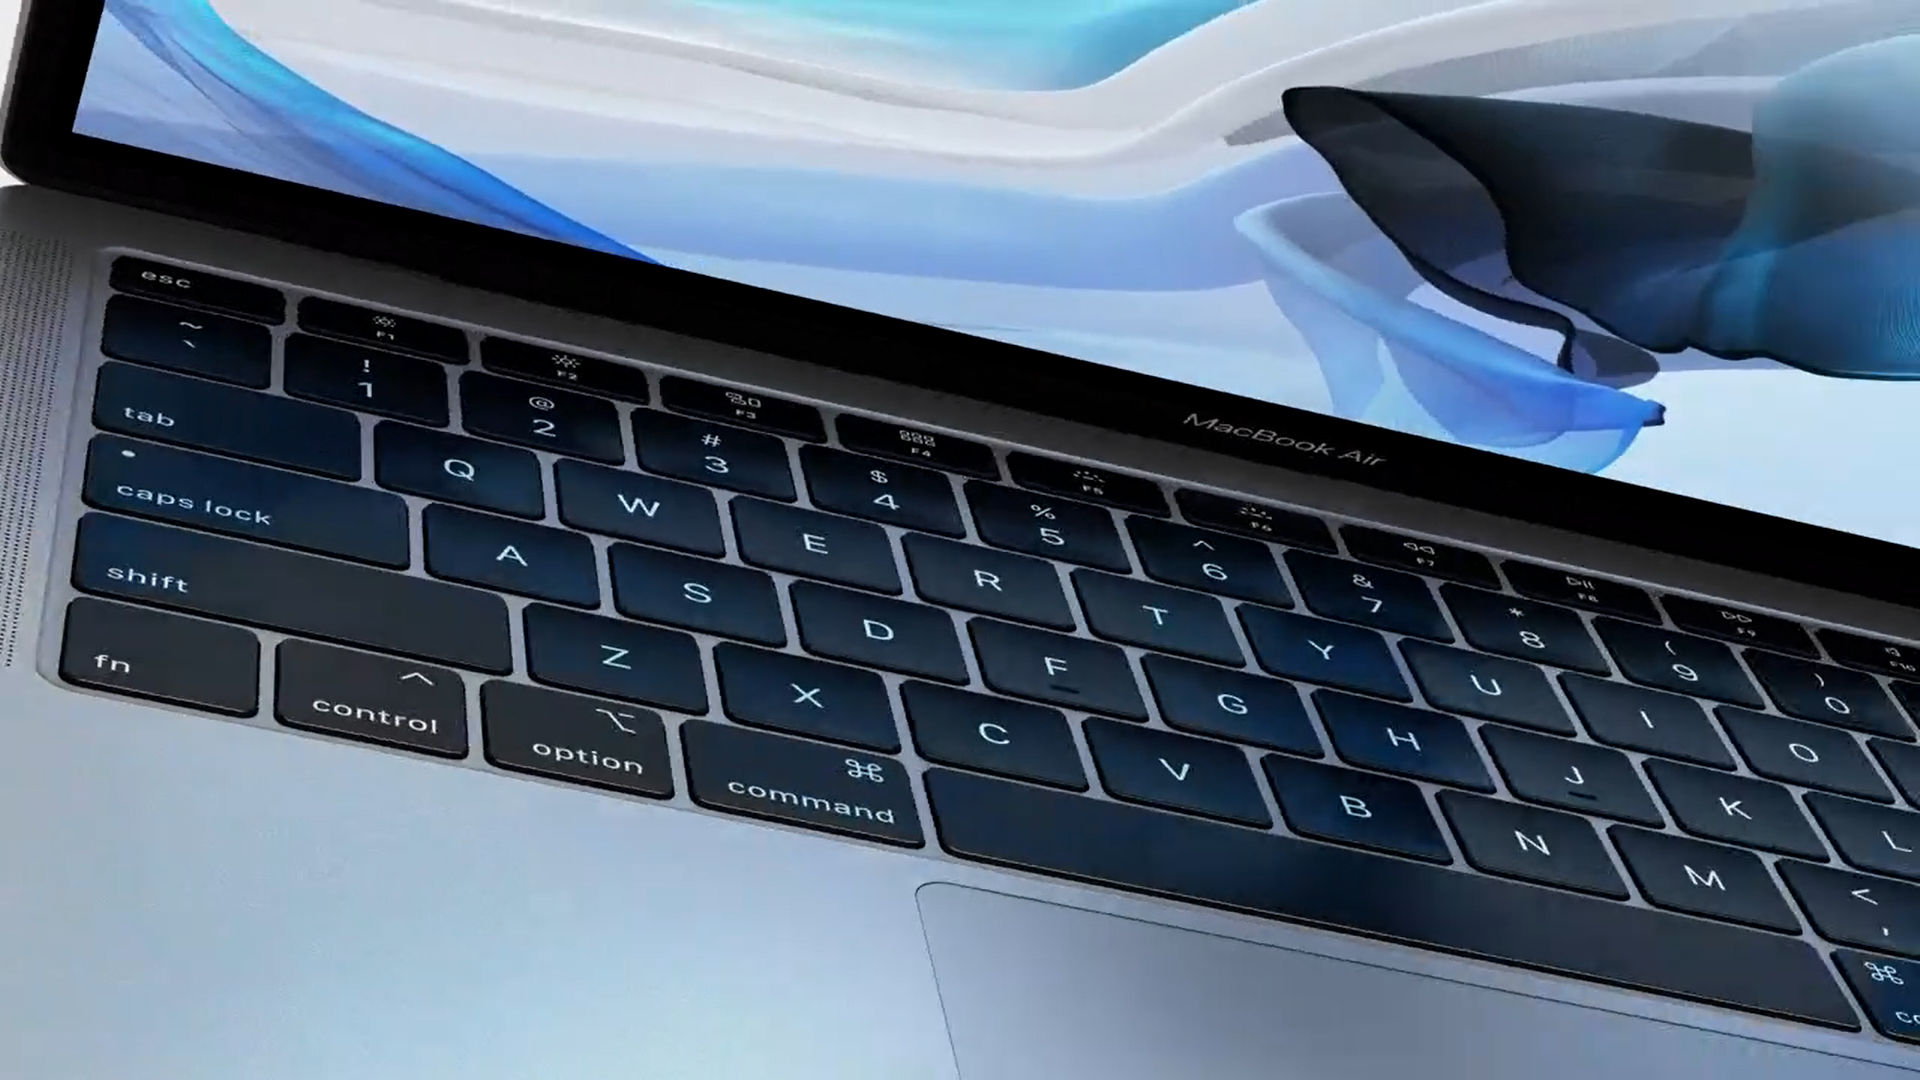 Tipkovnica i trackpad su također modernizirani. Tipkovnica nalikuje onoj s MacBooka i MacBook Proa, dakle, ima iznimno kratak hod pritiska. Trackpad je zamijenjen s novijim Force Touch modelom, također nalik onom s MacBook Proa. Kućište je tanje, sa samo 15,6 milimetara debljine. Cijeli laptop je ukupno 17 posto manji od prethodnika, a cijelo kućište je izrađeno od recikliranog materijala.